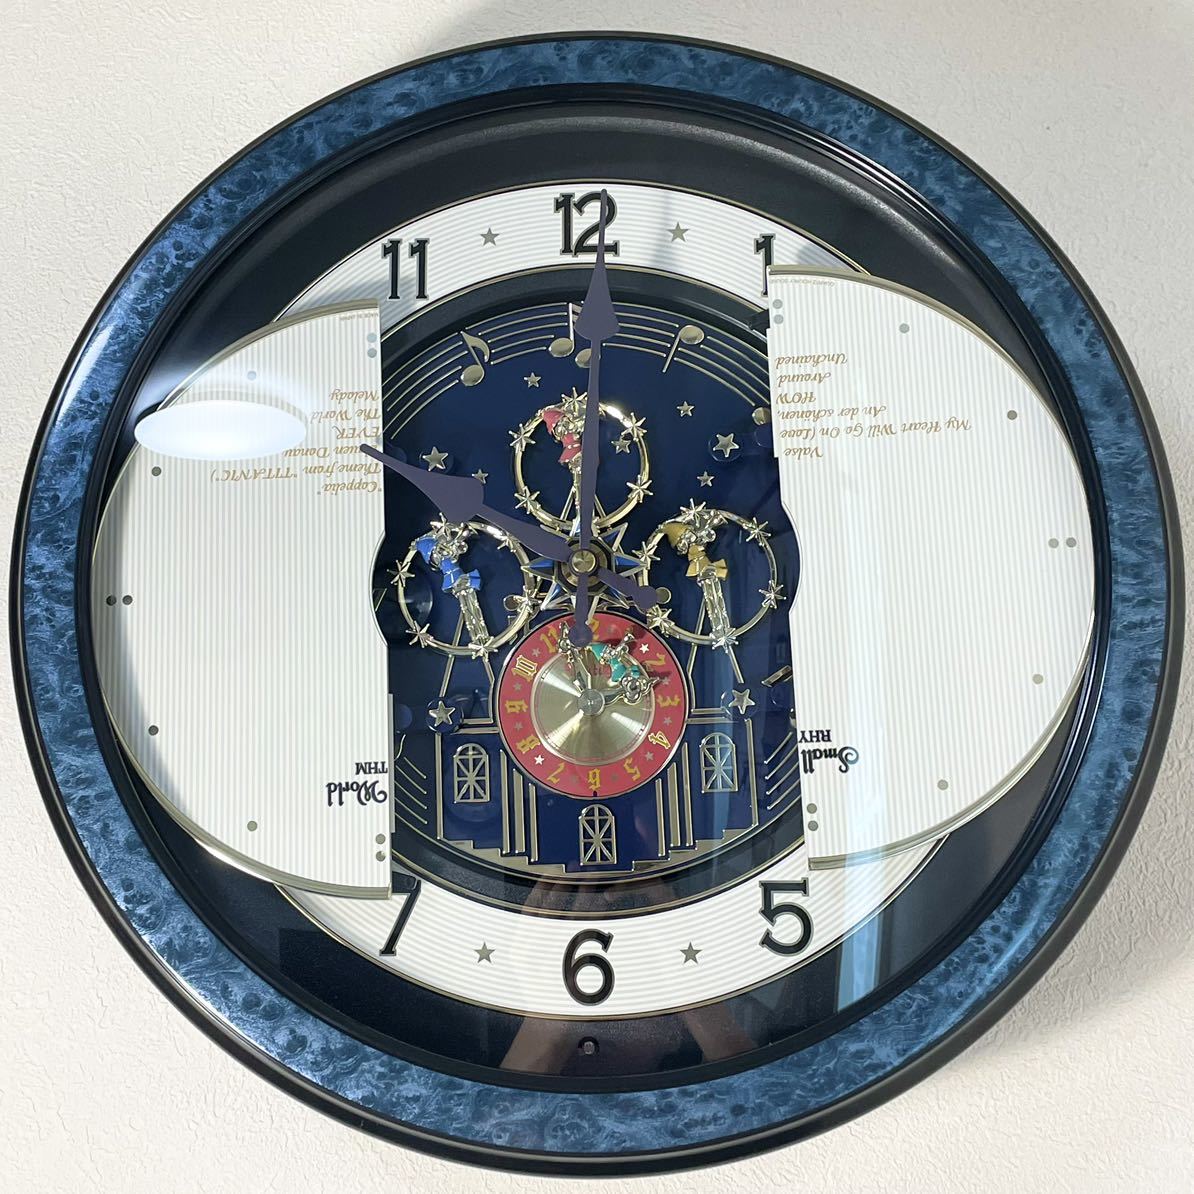 リズム時計 スモールワールドカーニバルタウン 4MH758RN からくり時計 